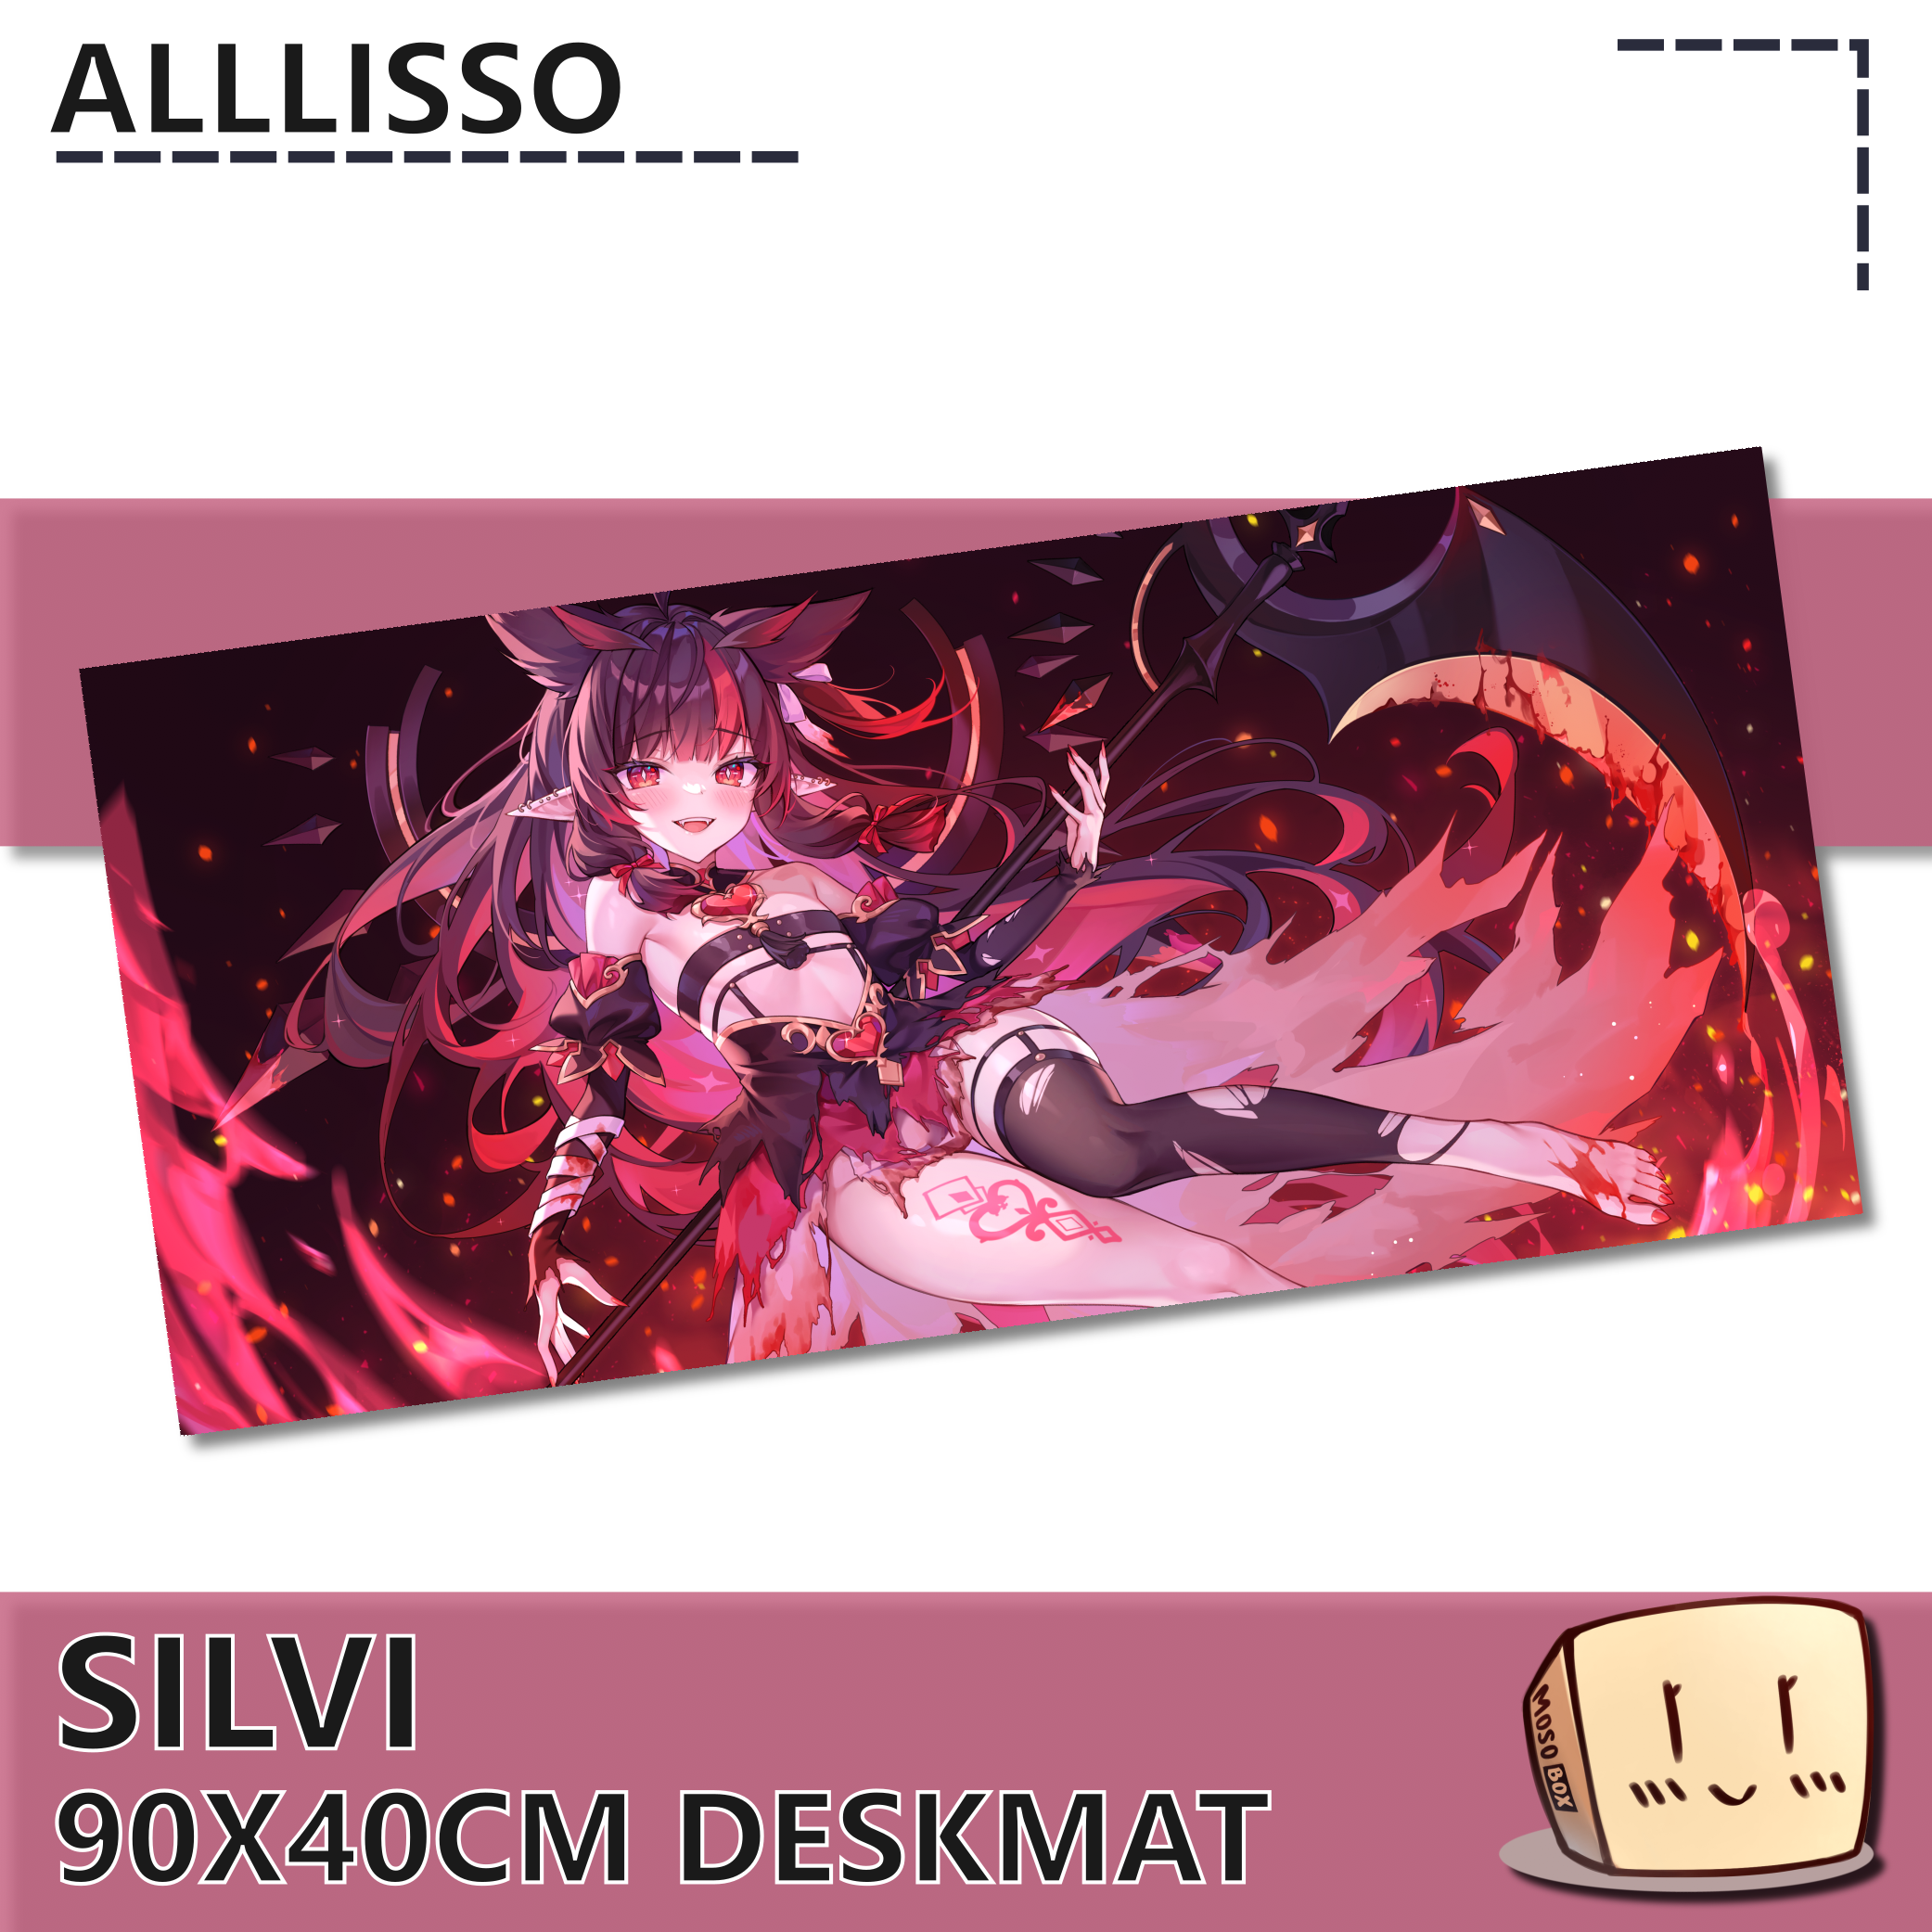 SLV-DM-01 Silvi Deskmat - Alllisso - Store Image